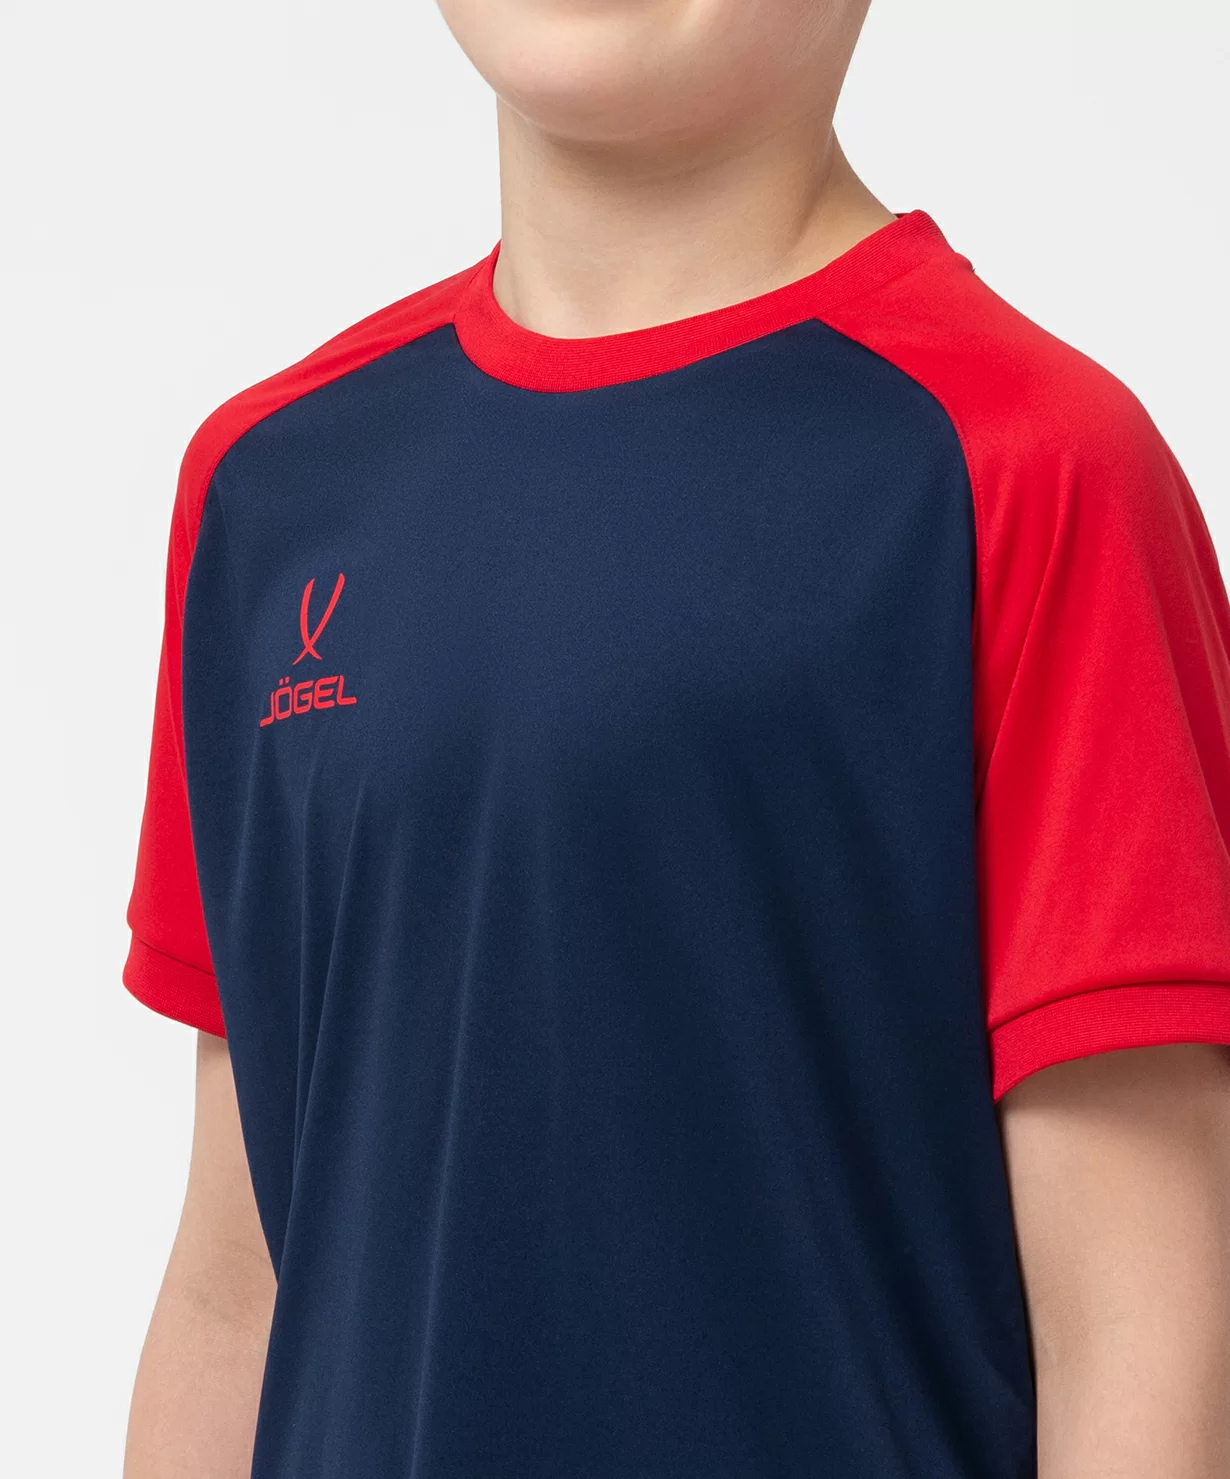 Реальное фото Футболка игровая CAMP Reglan Jersey, темно-синий/красный, детский Jögel от магазина Спортев